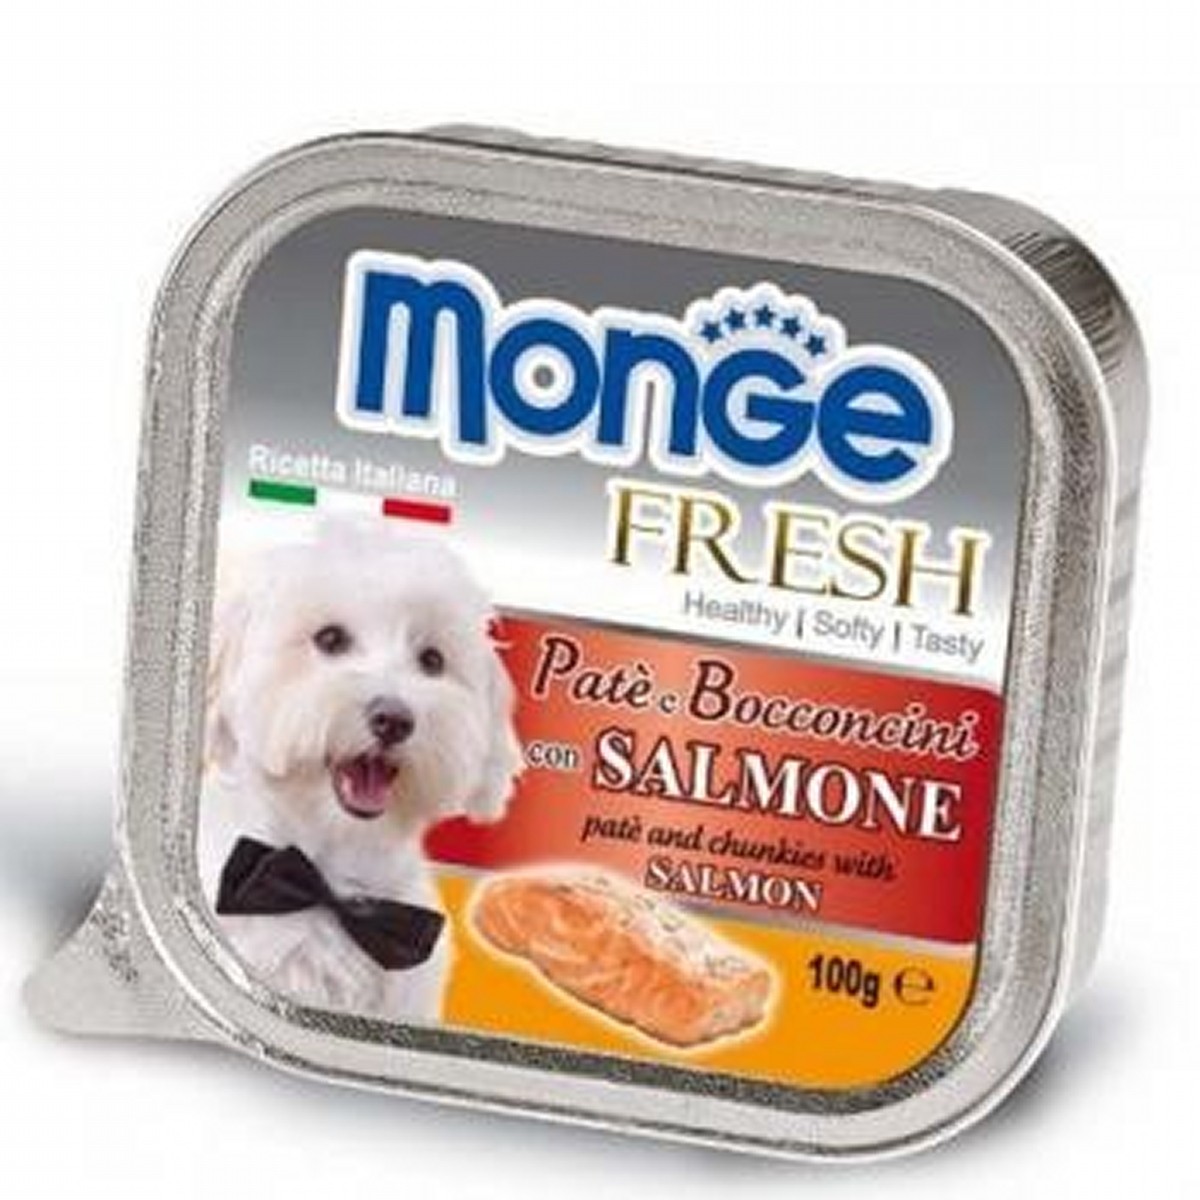 Monge Fresh pâté with pieces of salmon 100g